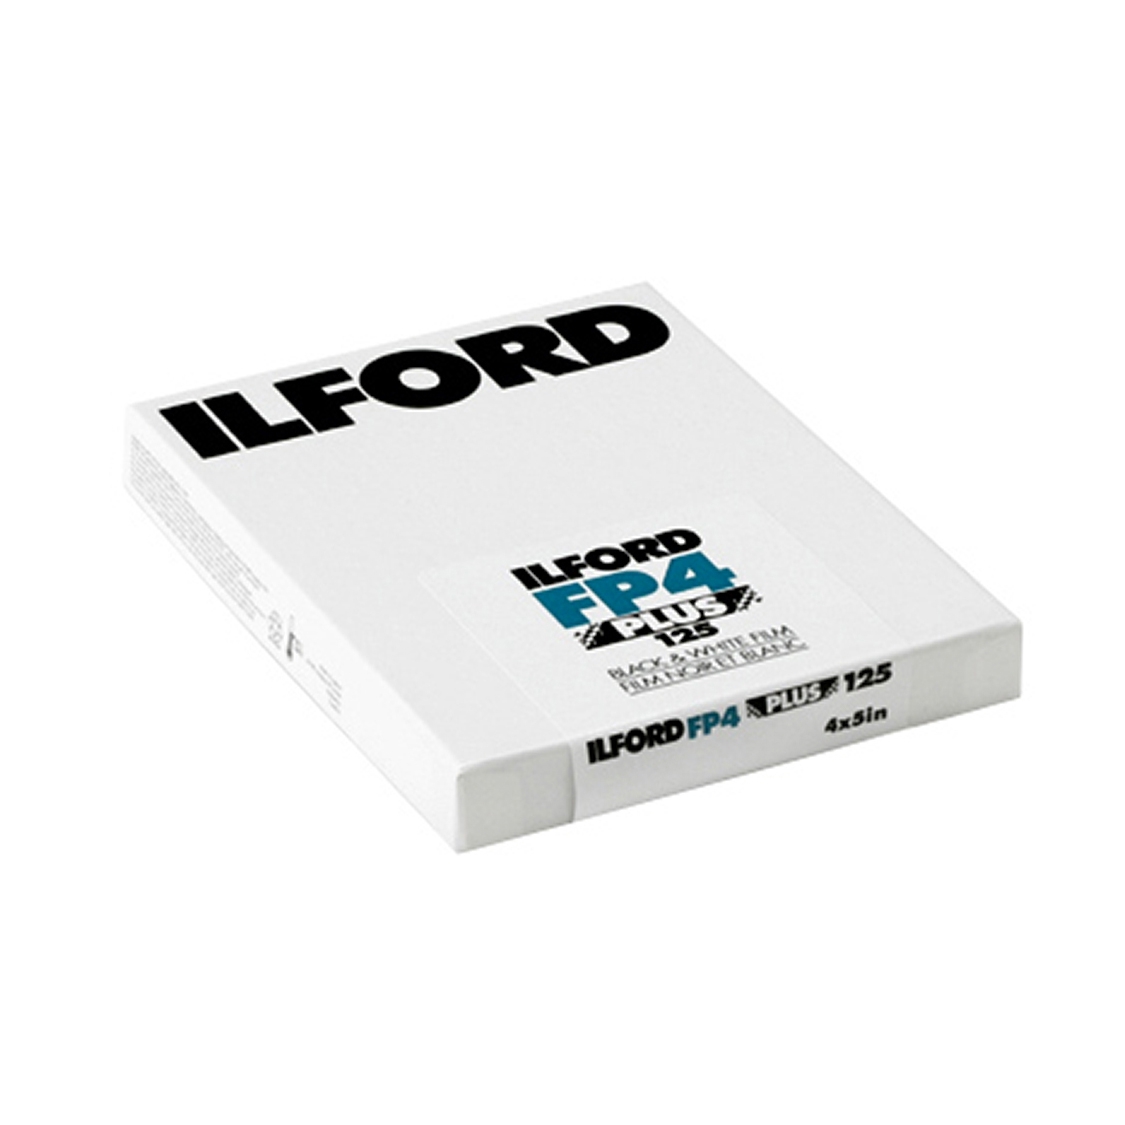 Ilford FP4 Plus 4x5 Film (25 sheets)